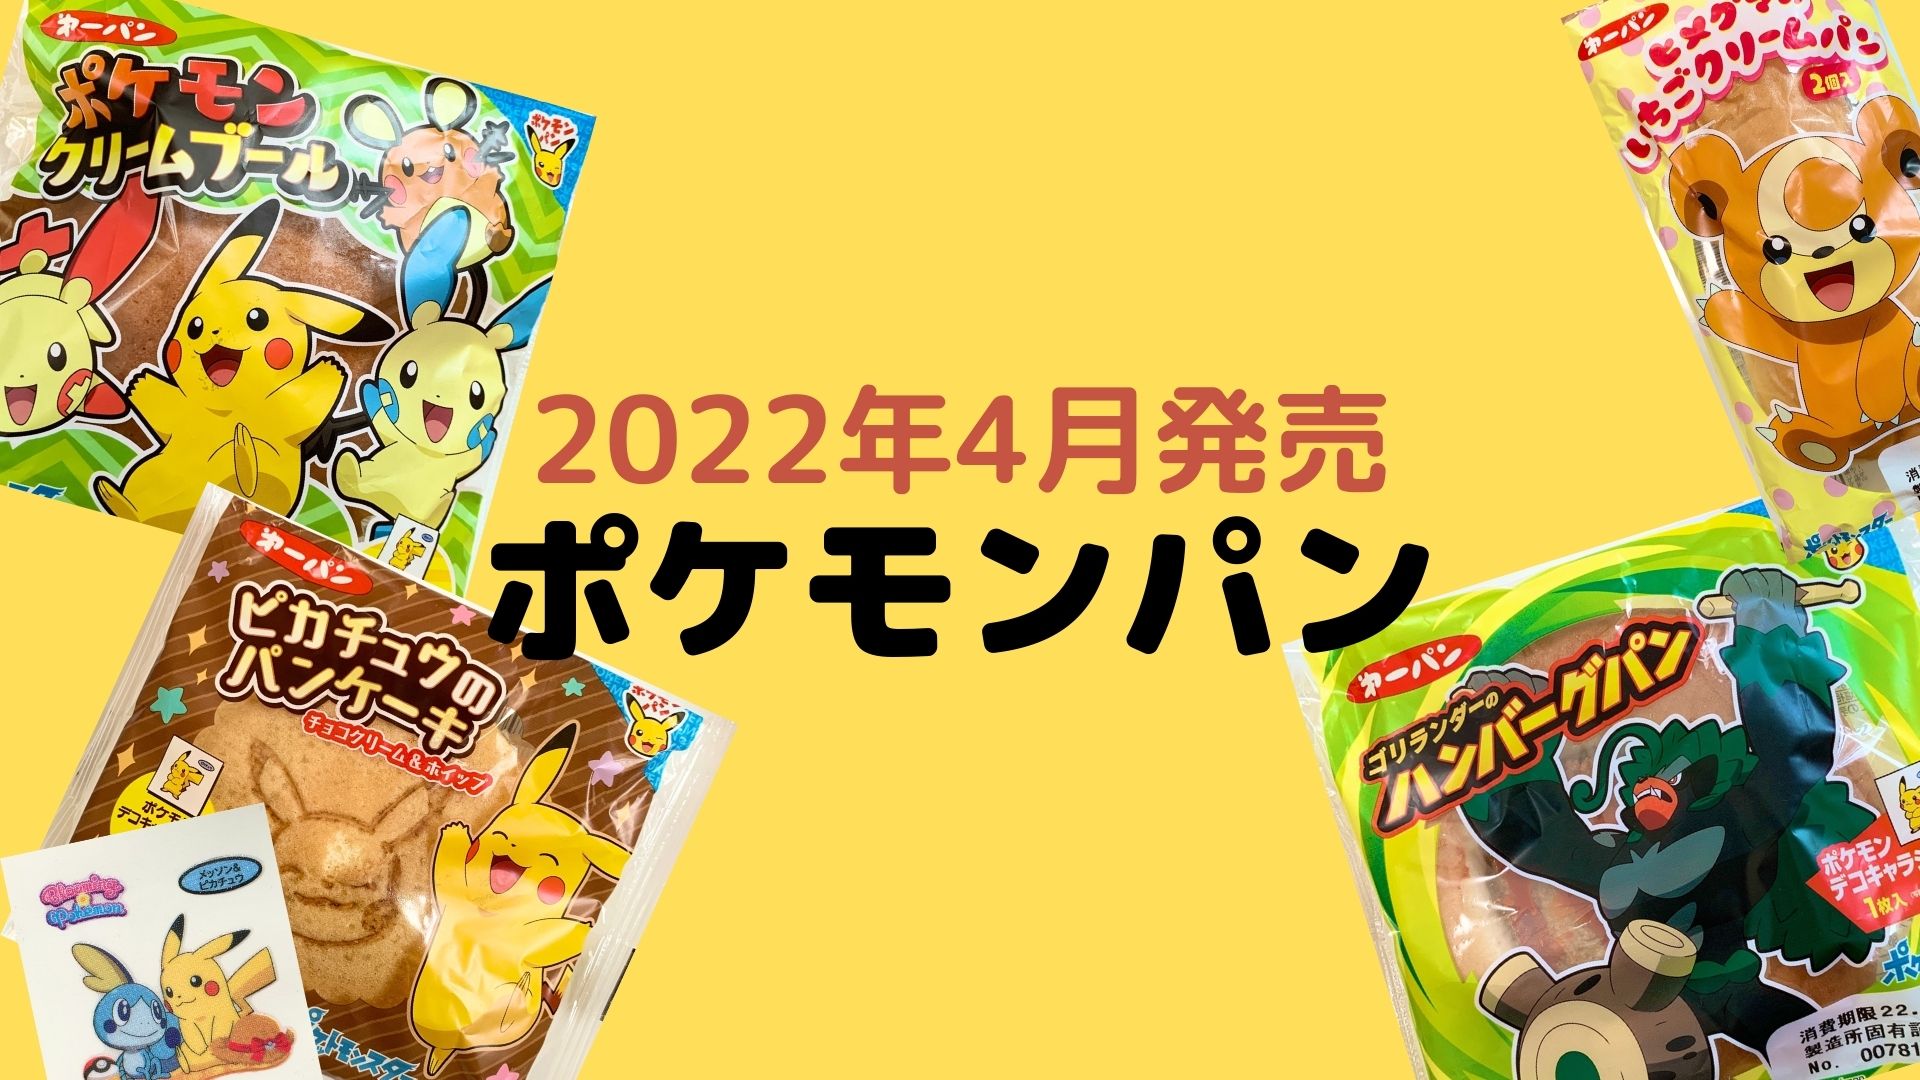 ポケモンパン 22年4月発売 を紹介 断面図 おいしい食べ方も おいちゃんブログ